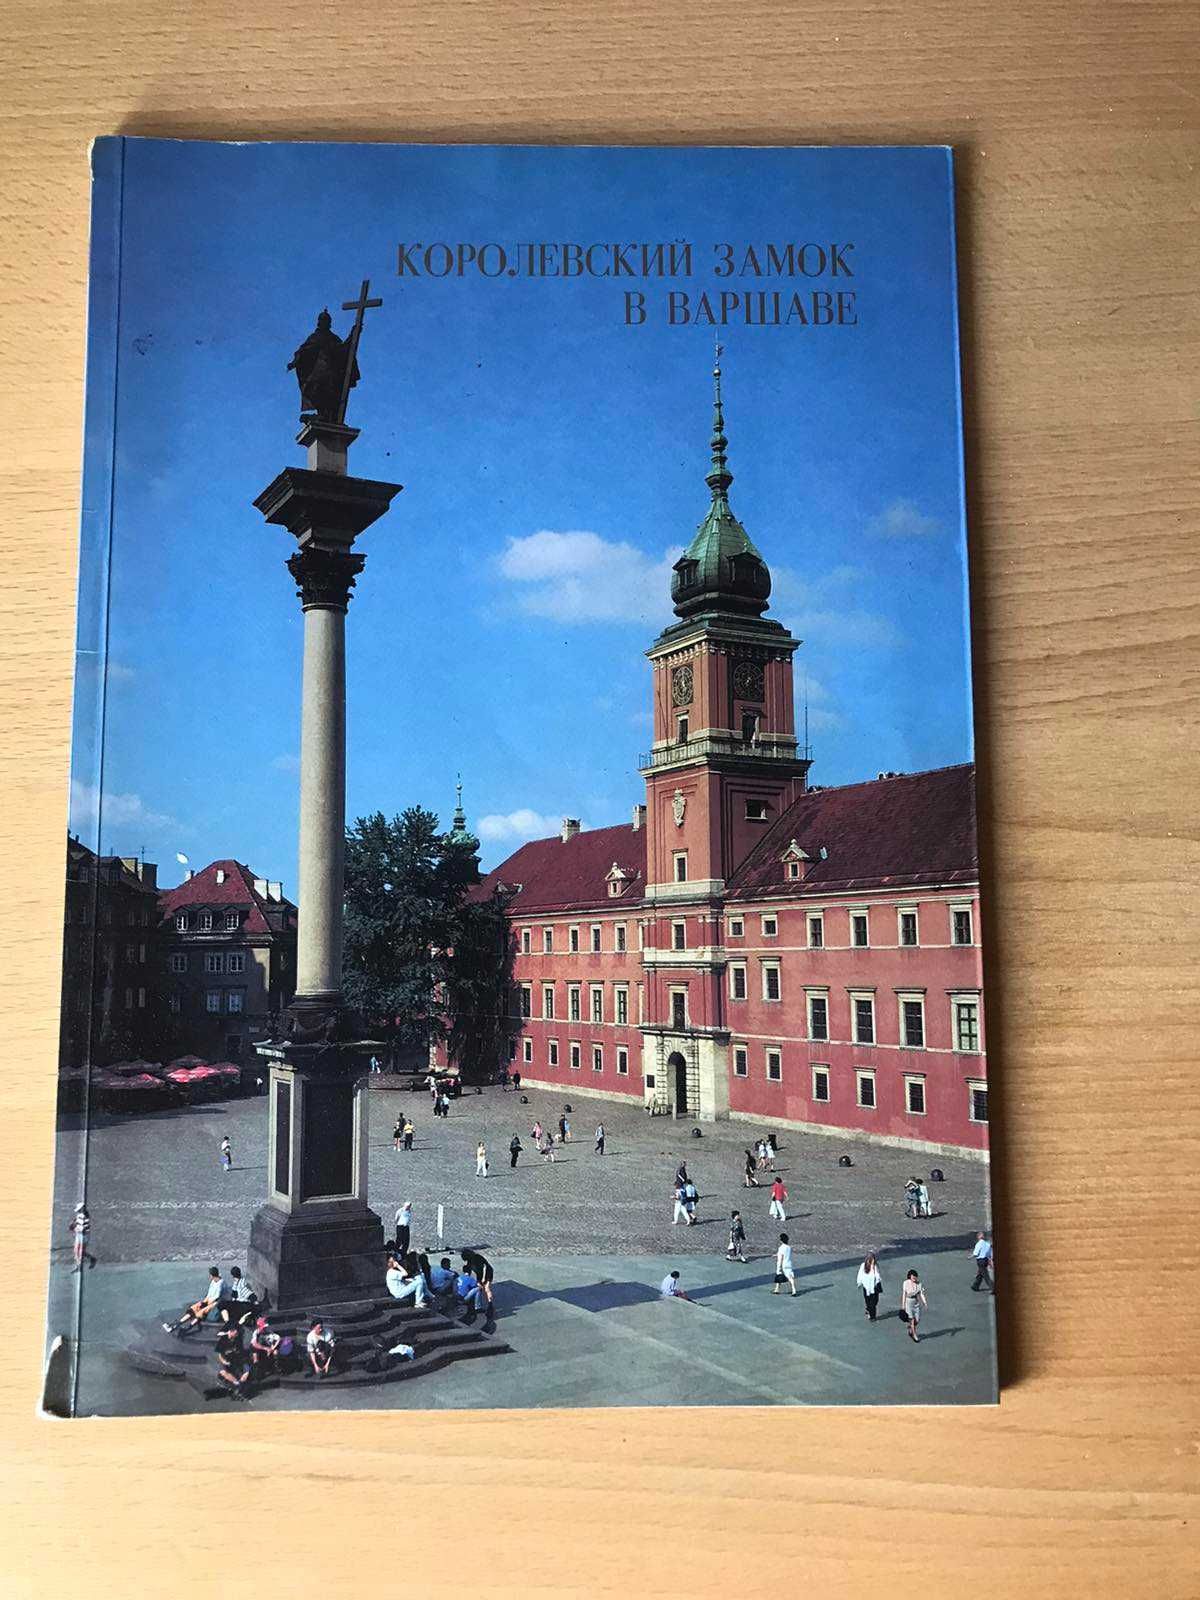 Информационная книжечка про Королевский замок в Варшаве